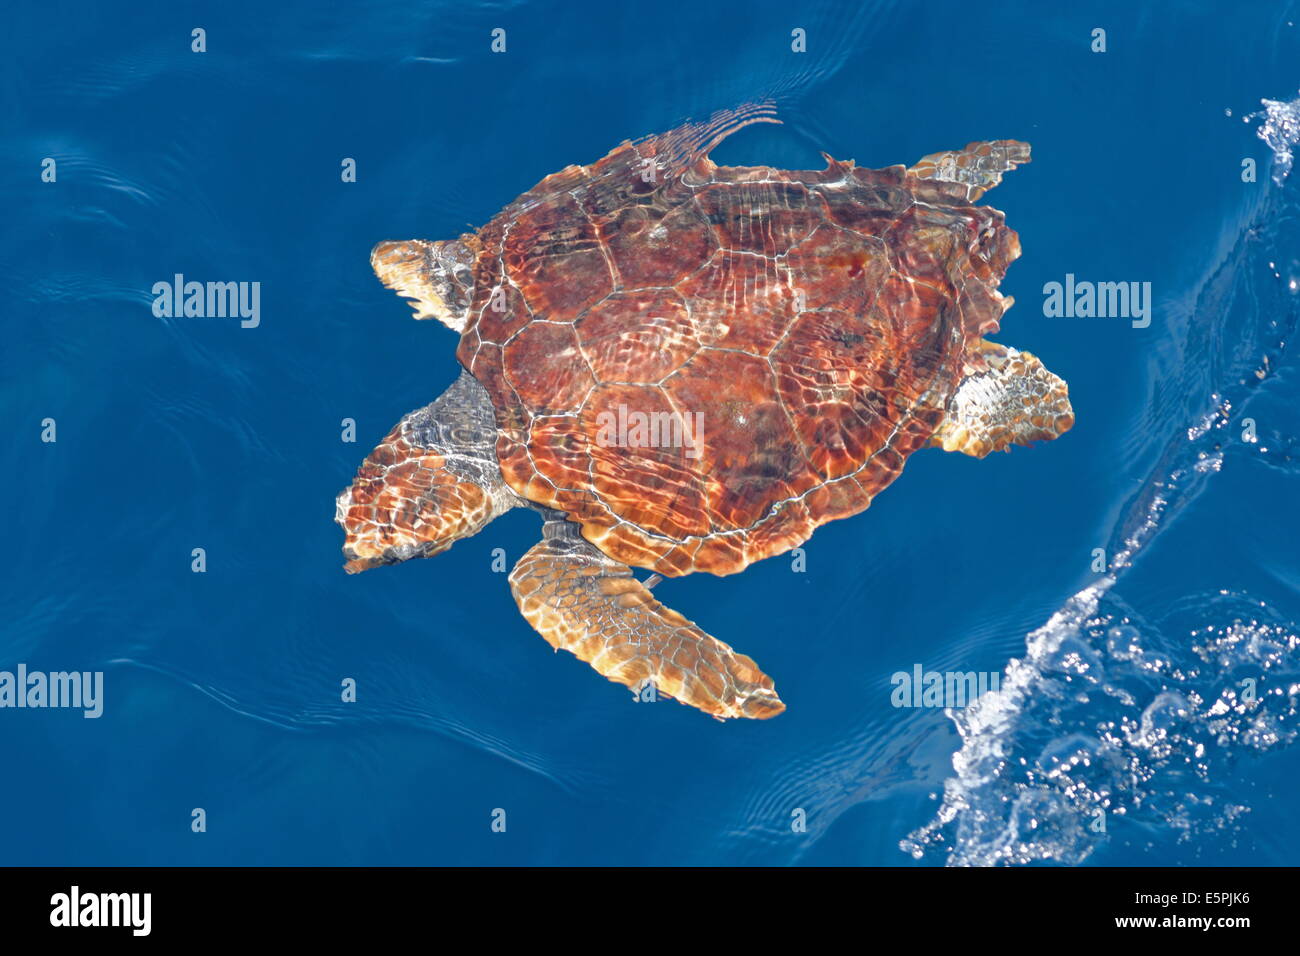 Juvenile Unechte Karettschildkröte (Caretta Caretta), ozeanische Bühne, unter die Oberfläche im tiefen Wasser, Nordost-Atlantik, Offshore-Marokko Stockfoto